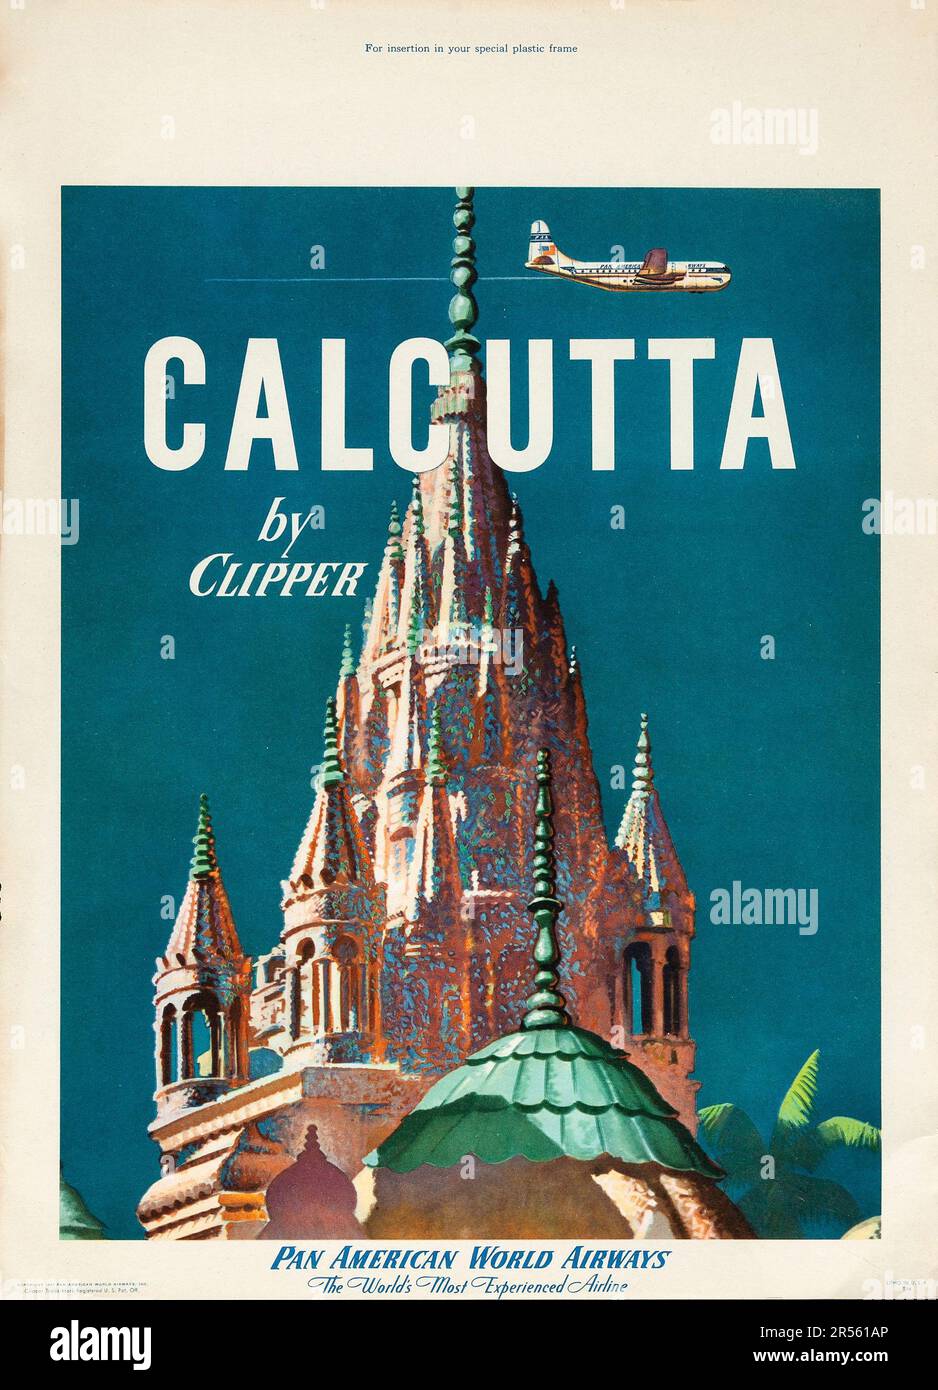 Calcutta by Clipper (Pan American World Airways, 1951) Reiseposter, indisches Reiseposter Stockfoto